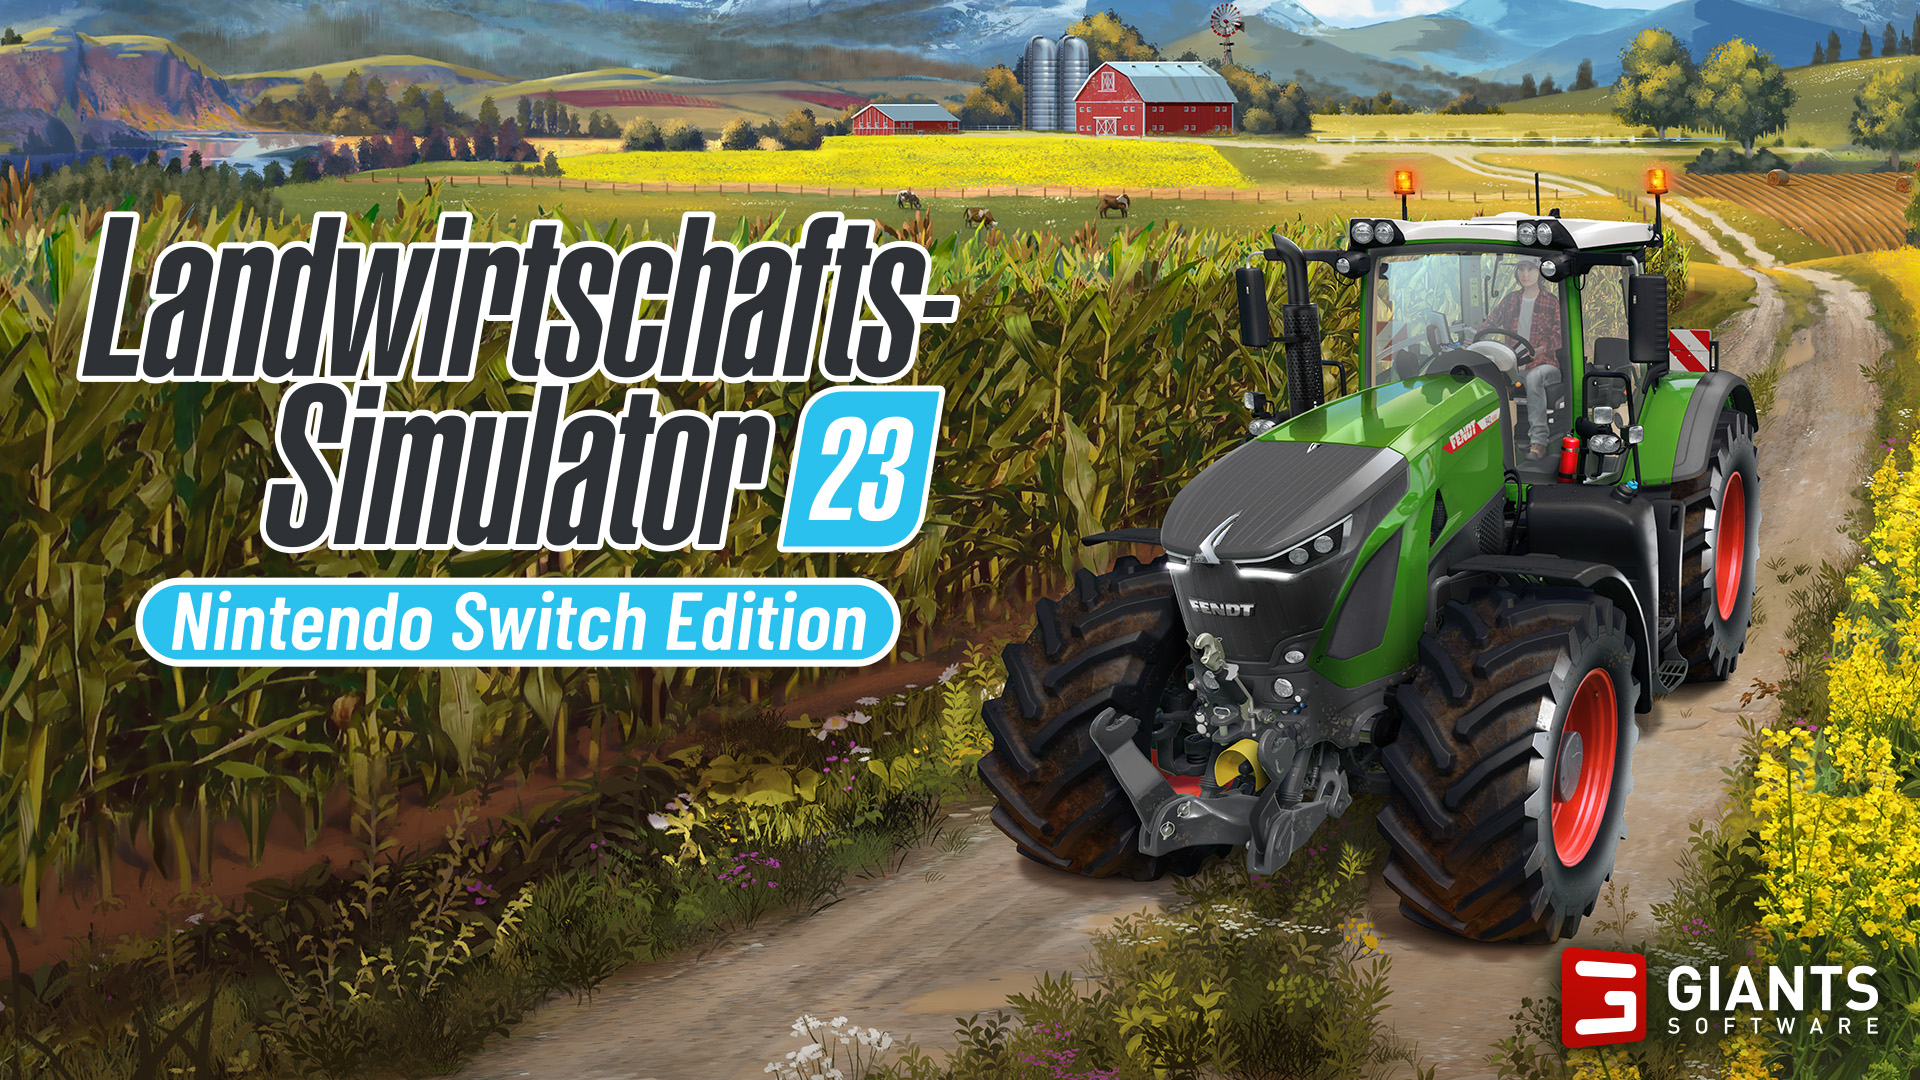 Landwirtschafts-Simulator Switch 23 Mai im erscheint für Nintendo